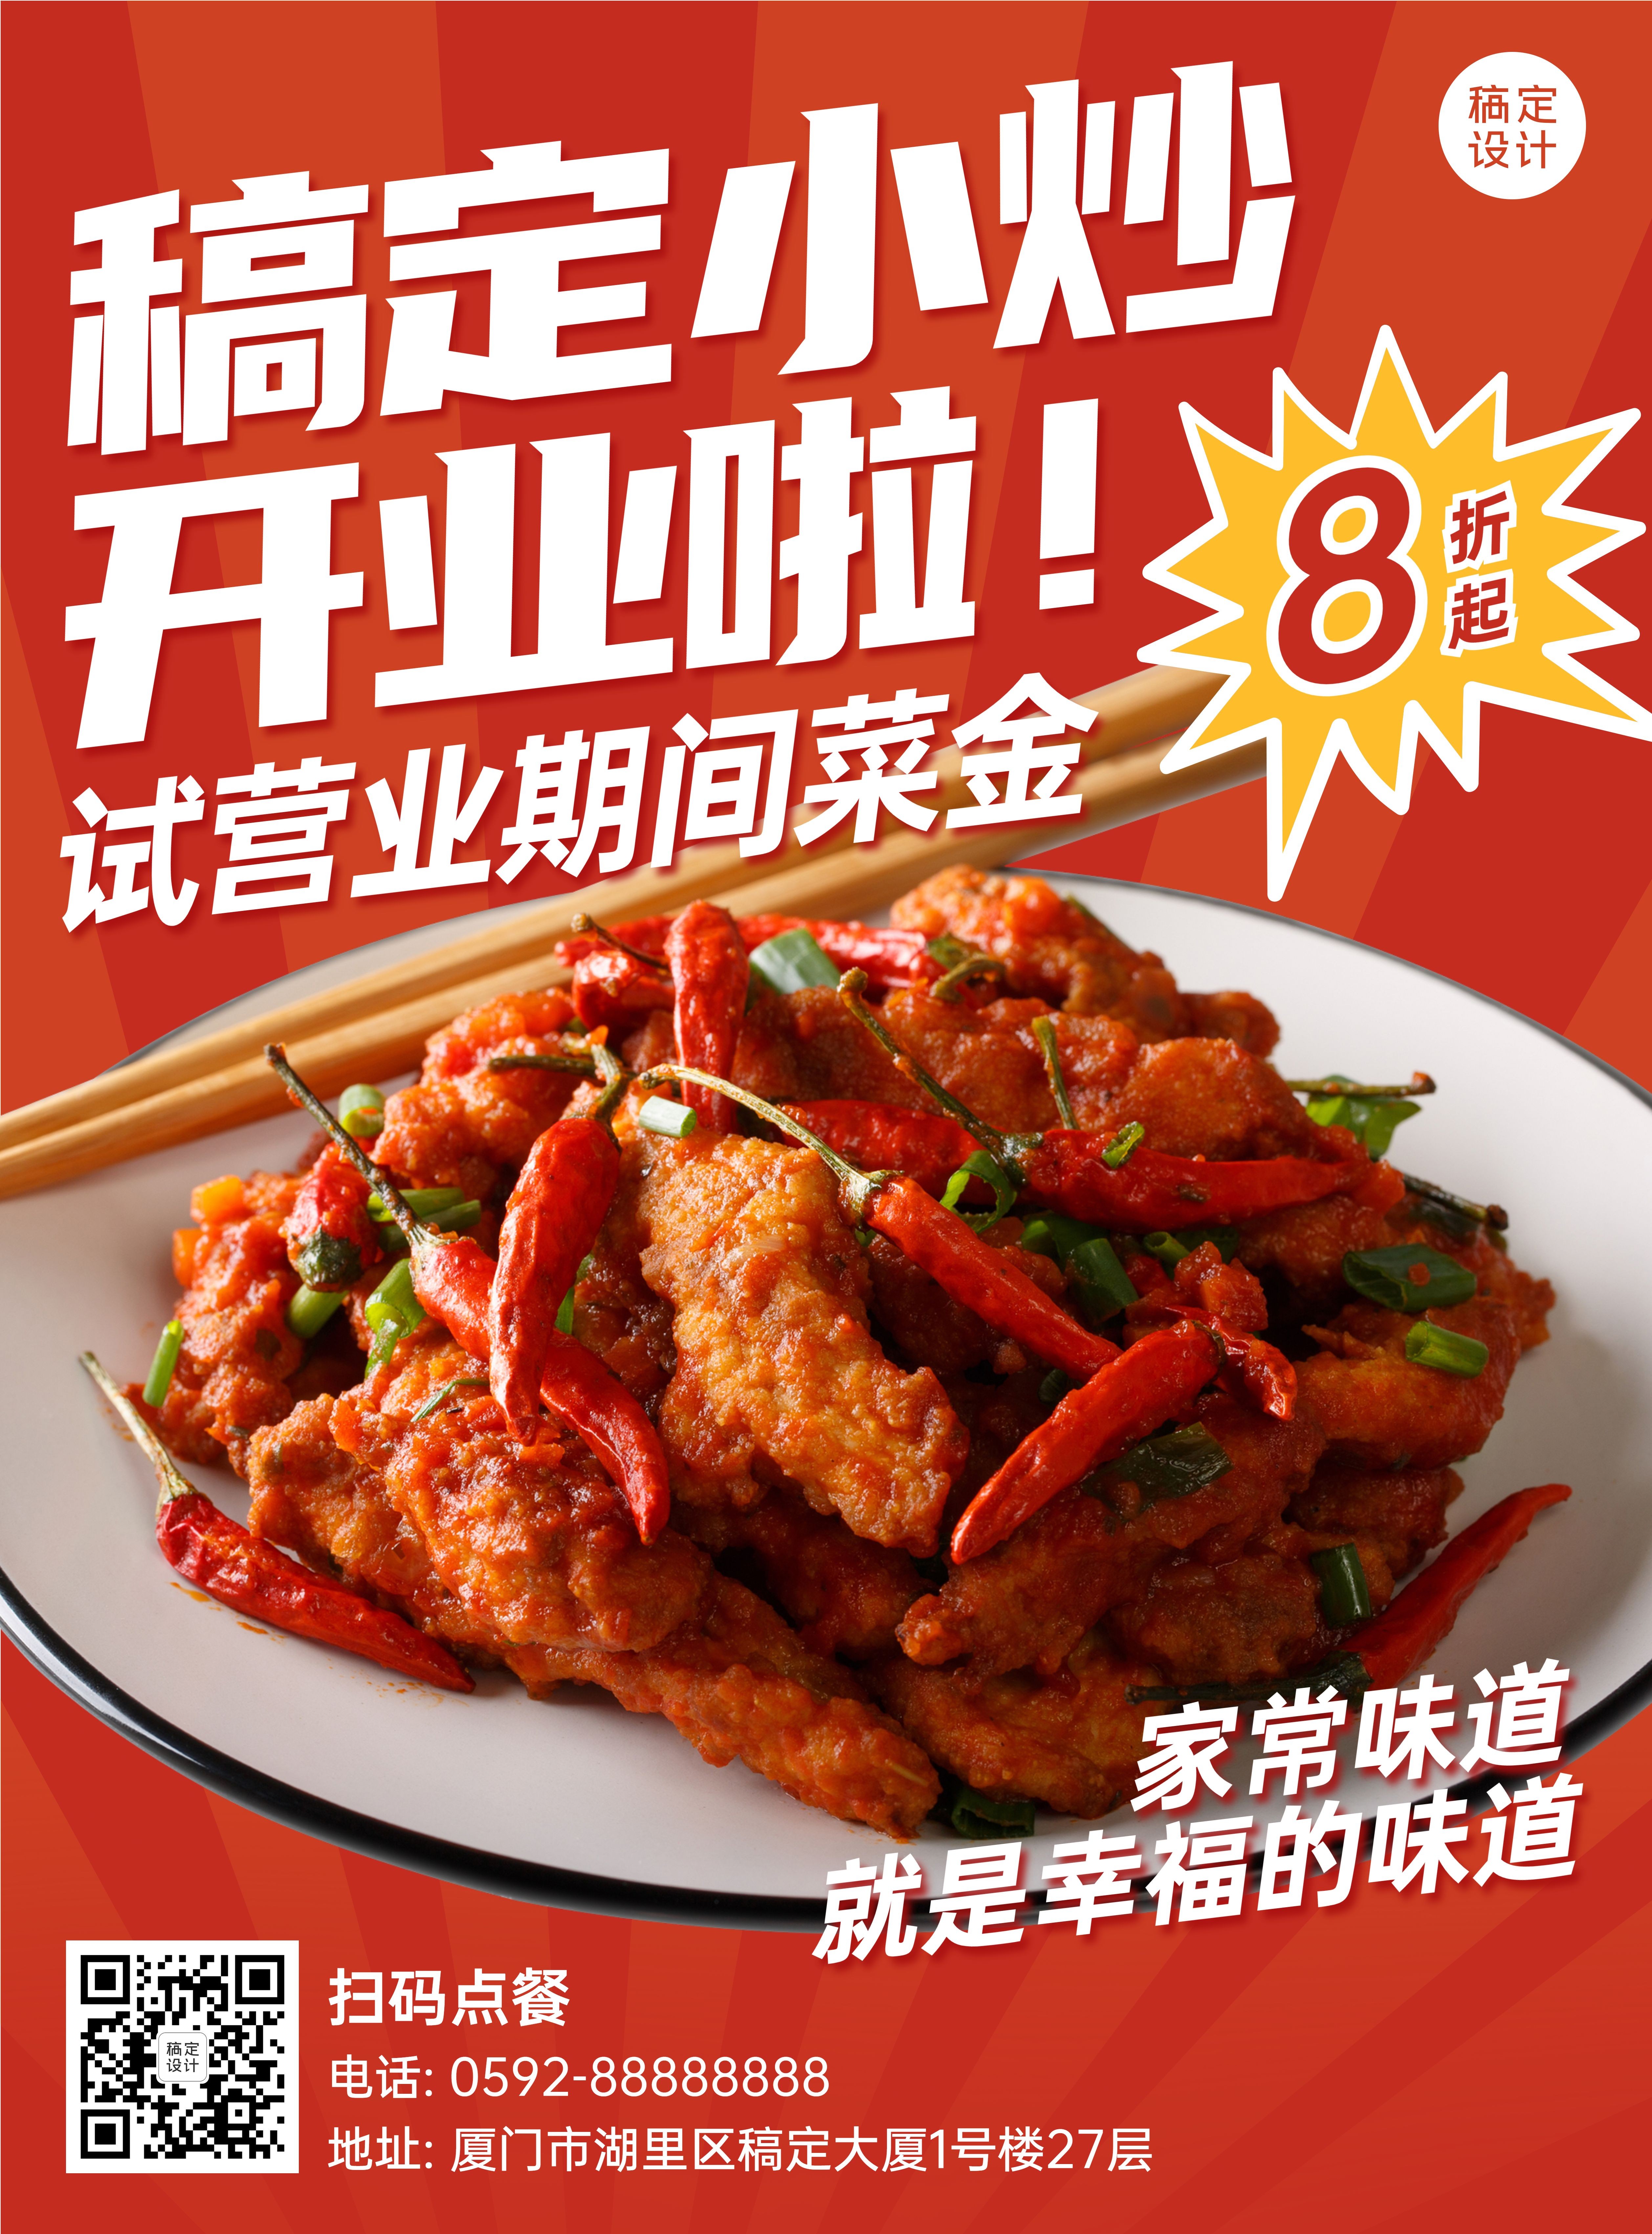 中式小吃便当开业活动张贴海报预览效果